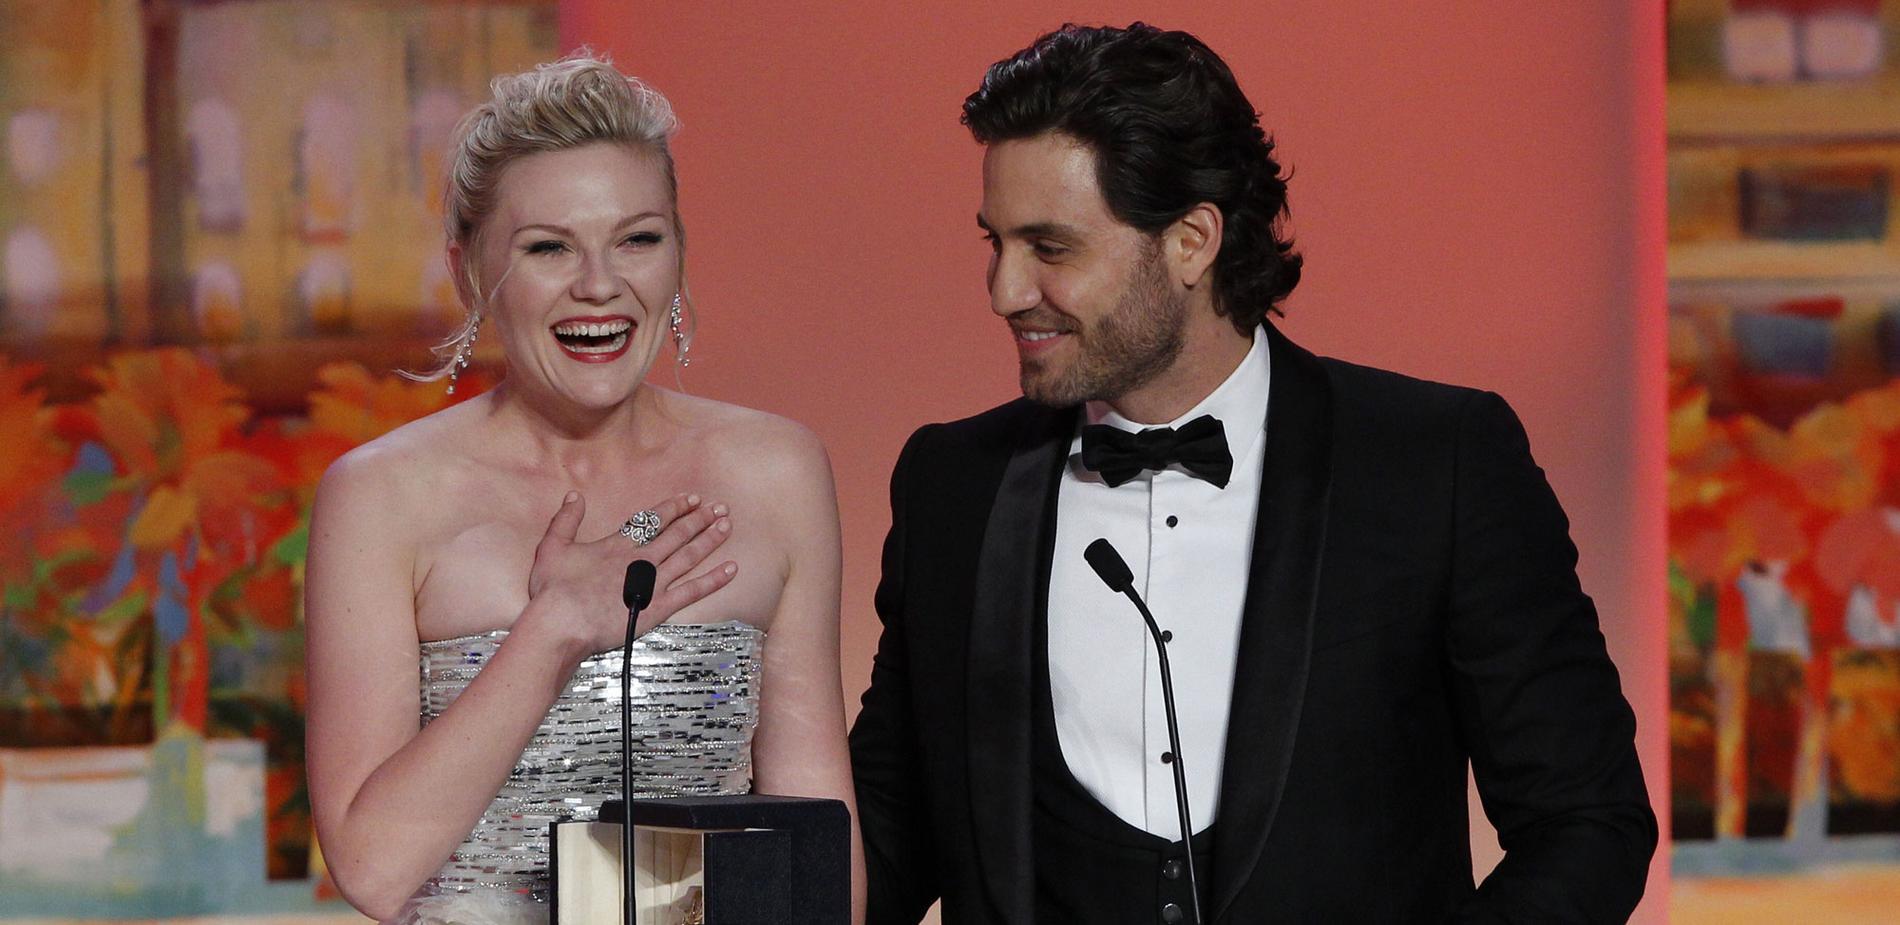 Vinnare trots skandal Kirsten Dunst när hon får pris på filmfestivalen i Cannes.